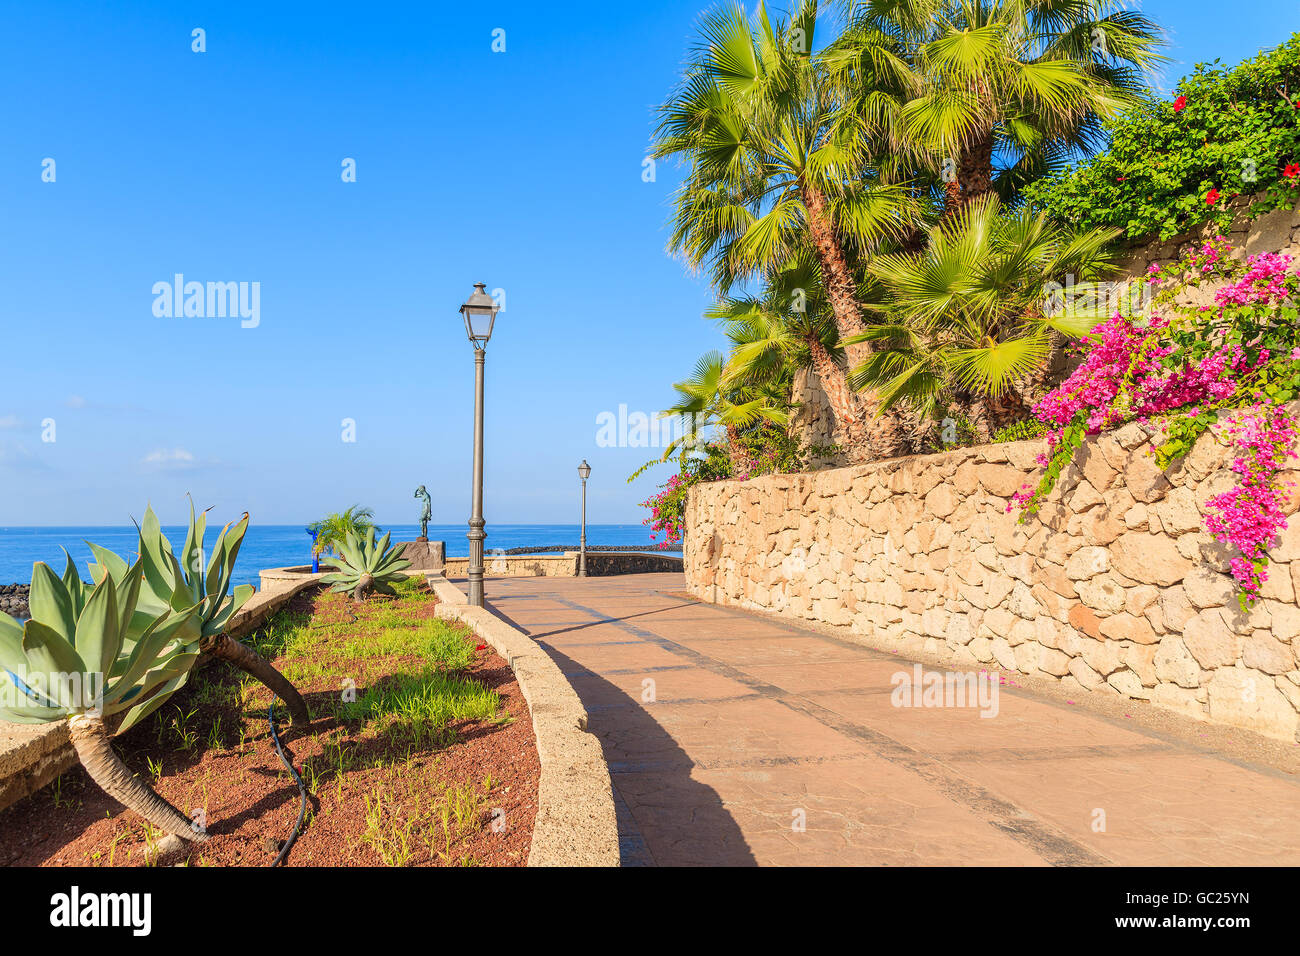 Promenade côtière avec des plantes tropicales dans seasise ville de Costa Adeje, Tenerife, Canaries, Espagne Banque D'Images